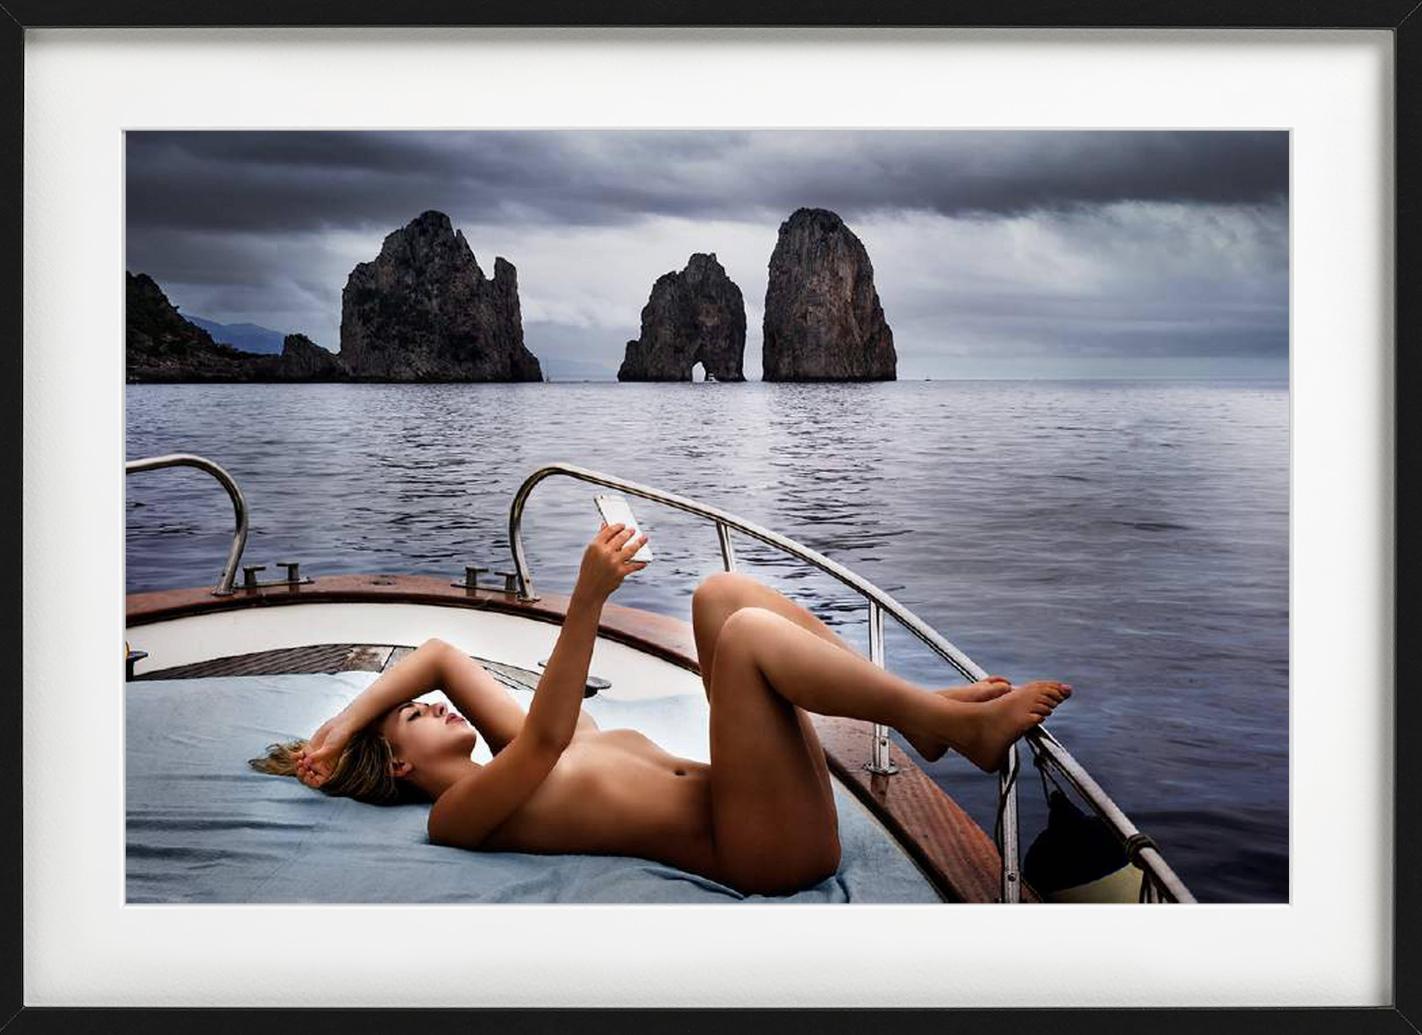 Capri Selfie – nackt auf einem Boot unter wolkenverhangenem Himmel, Kunstfotografie, 2016 (Zeitgenössisch), Photograph, von David Drebin